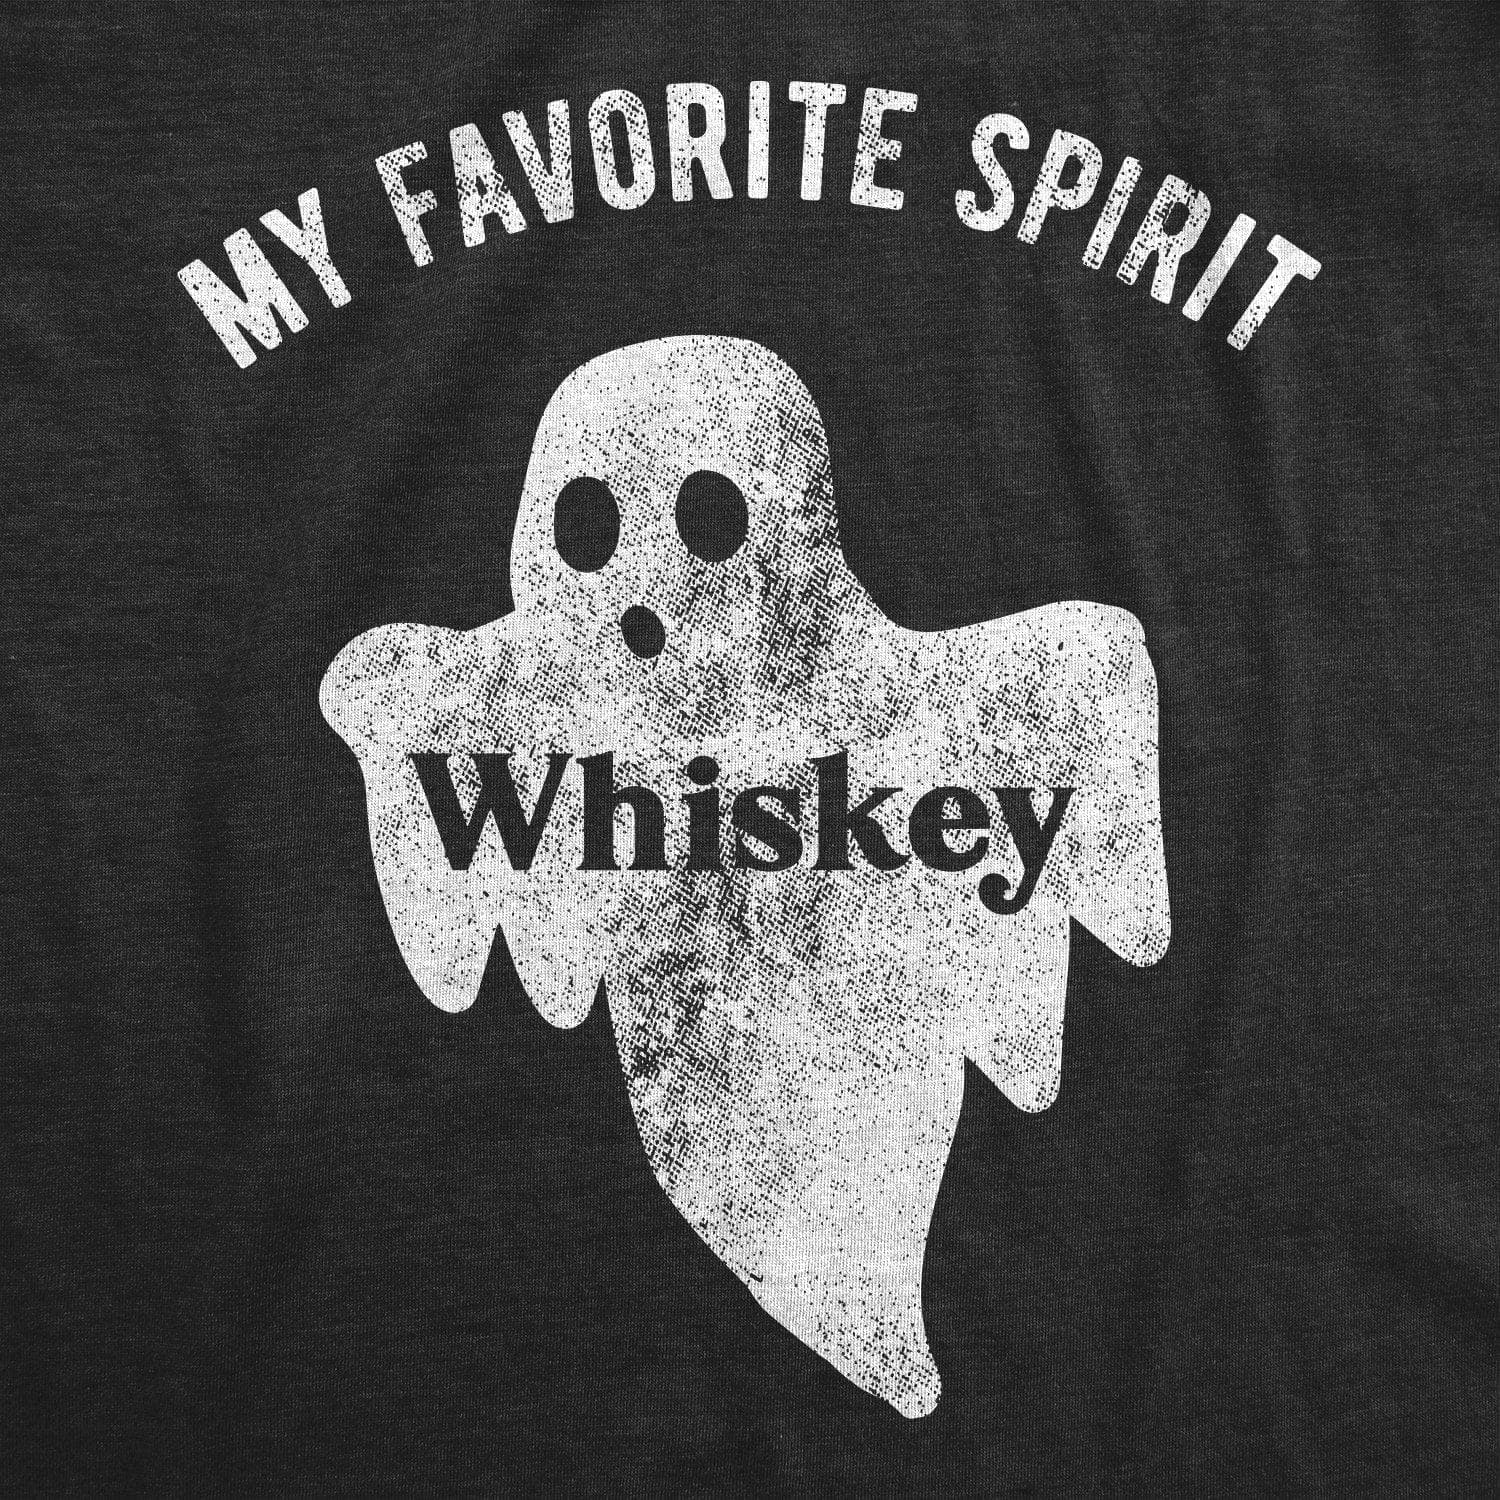 My Favorite Spirit Whiskey Men's Tshirt  -  Crazy Dog T-Shirts